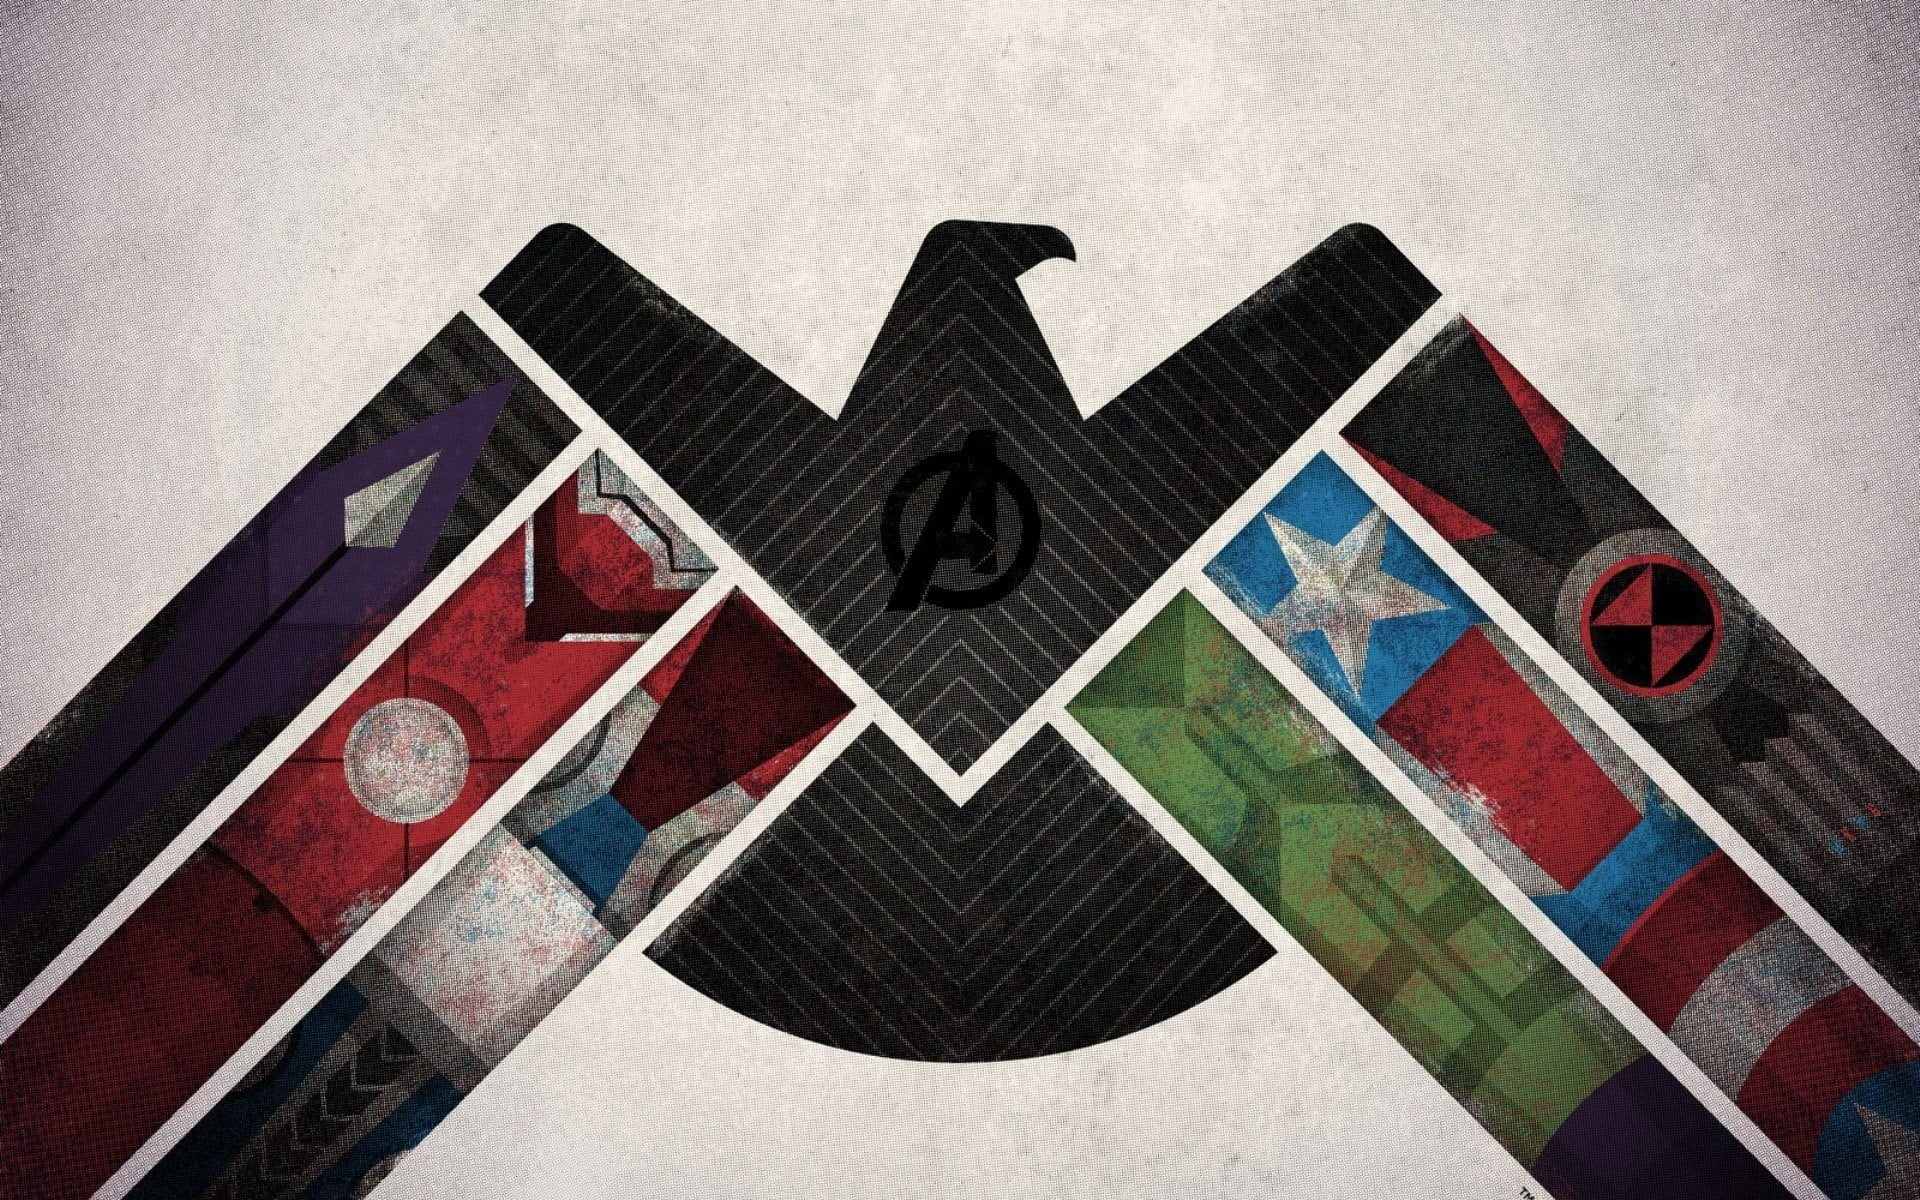 Marvel Avengers wallpaper, Iron Man, Thor